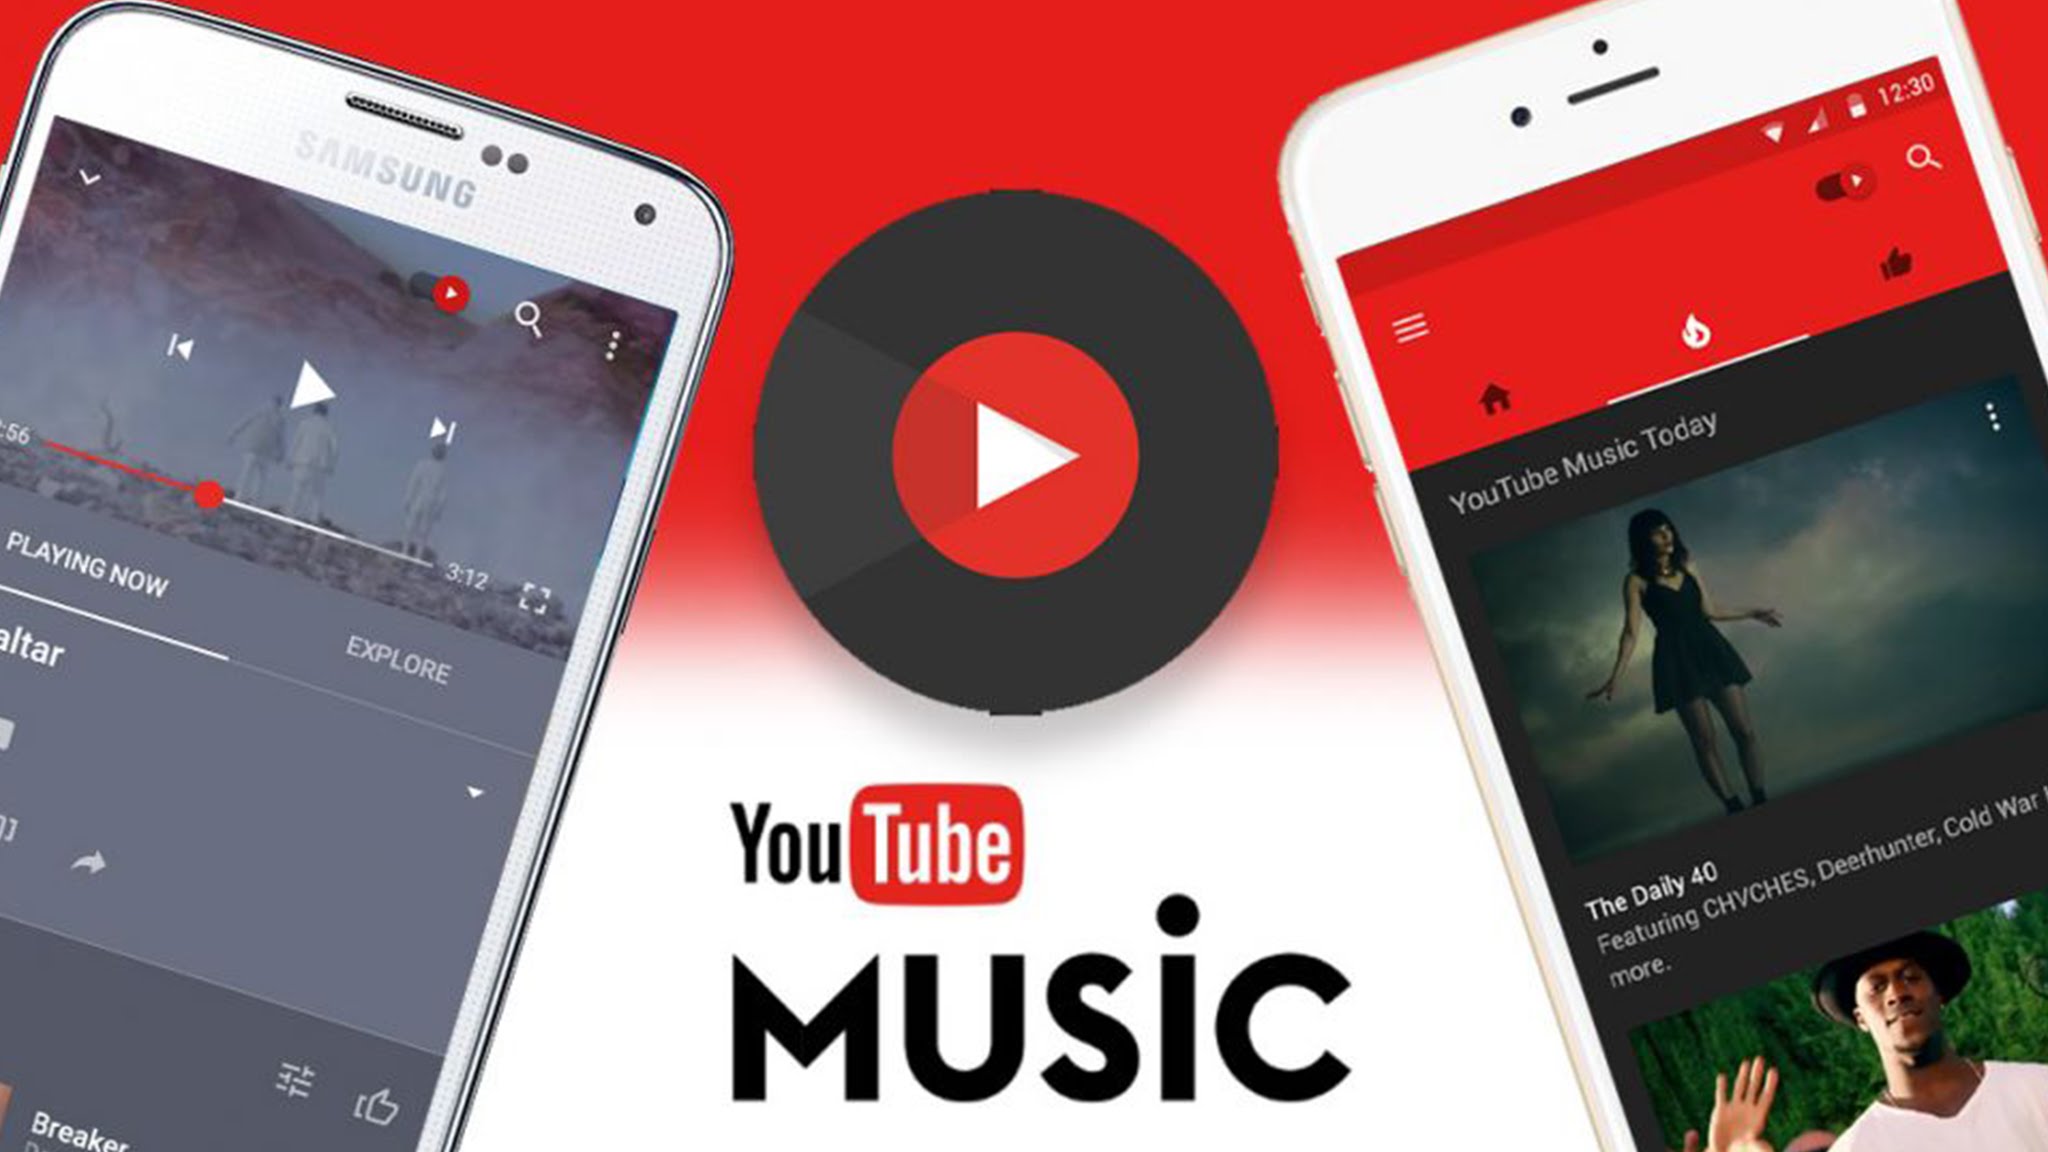 YouTube Music y YouTube Premium, ahora disponibles para España